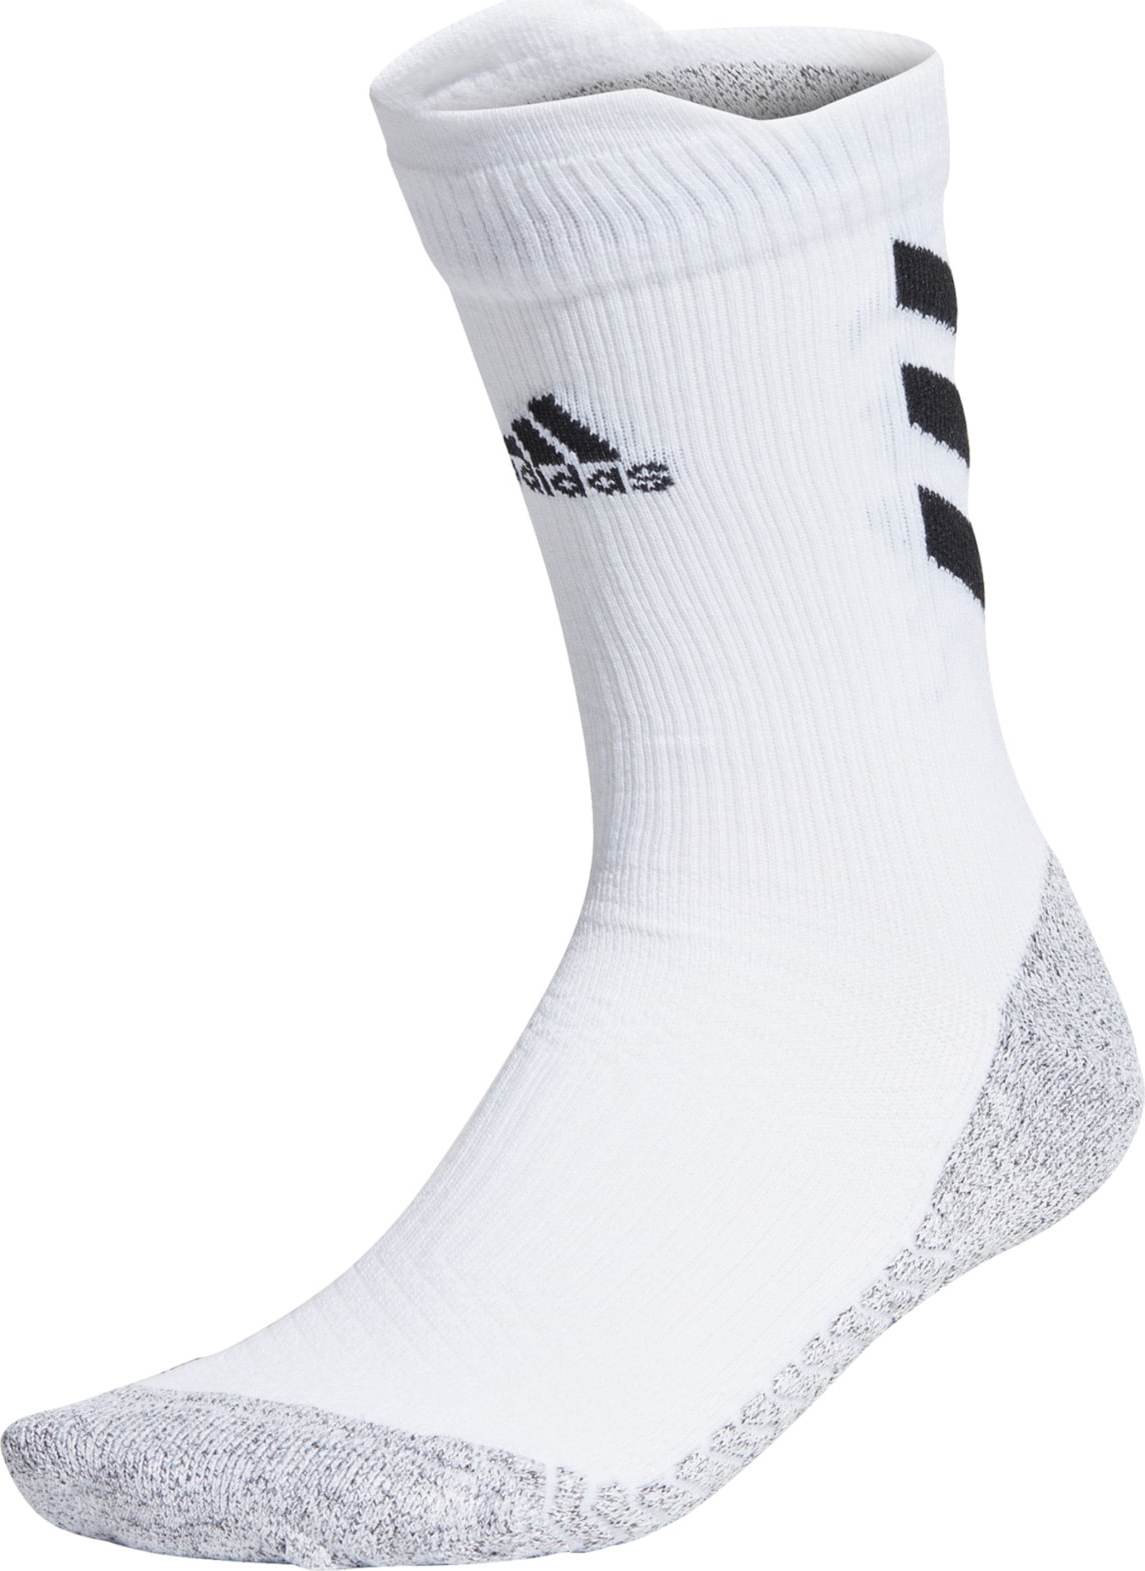 ADIDAS PERFORMANCE Sportovní ponožky černá / bílá